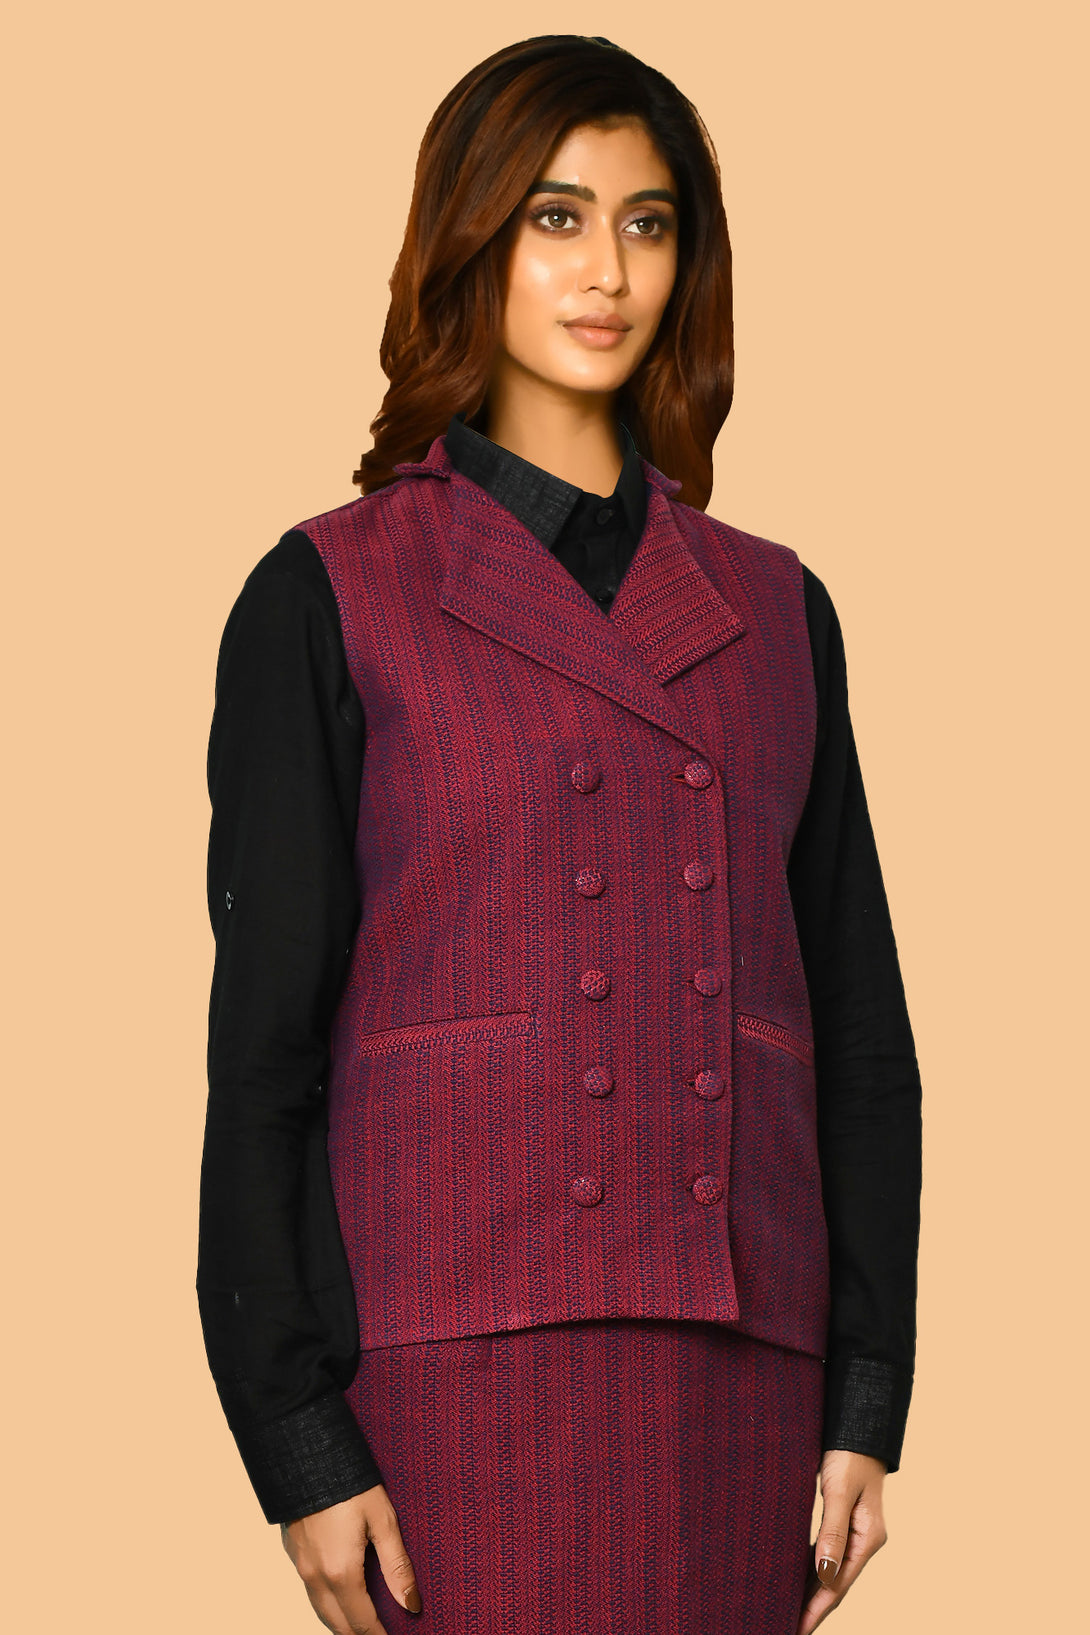 latest handloom cotton work wear jackets for women